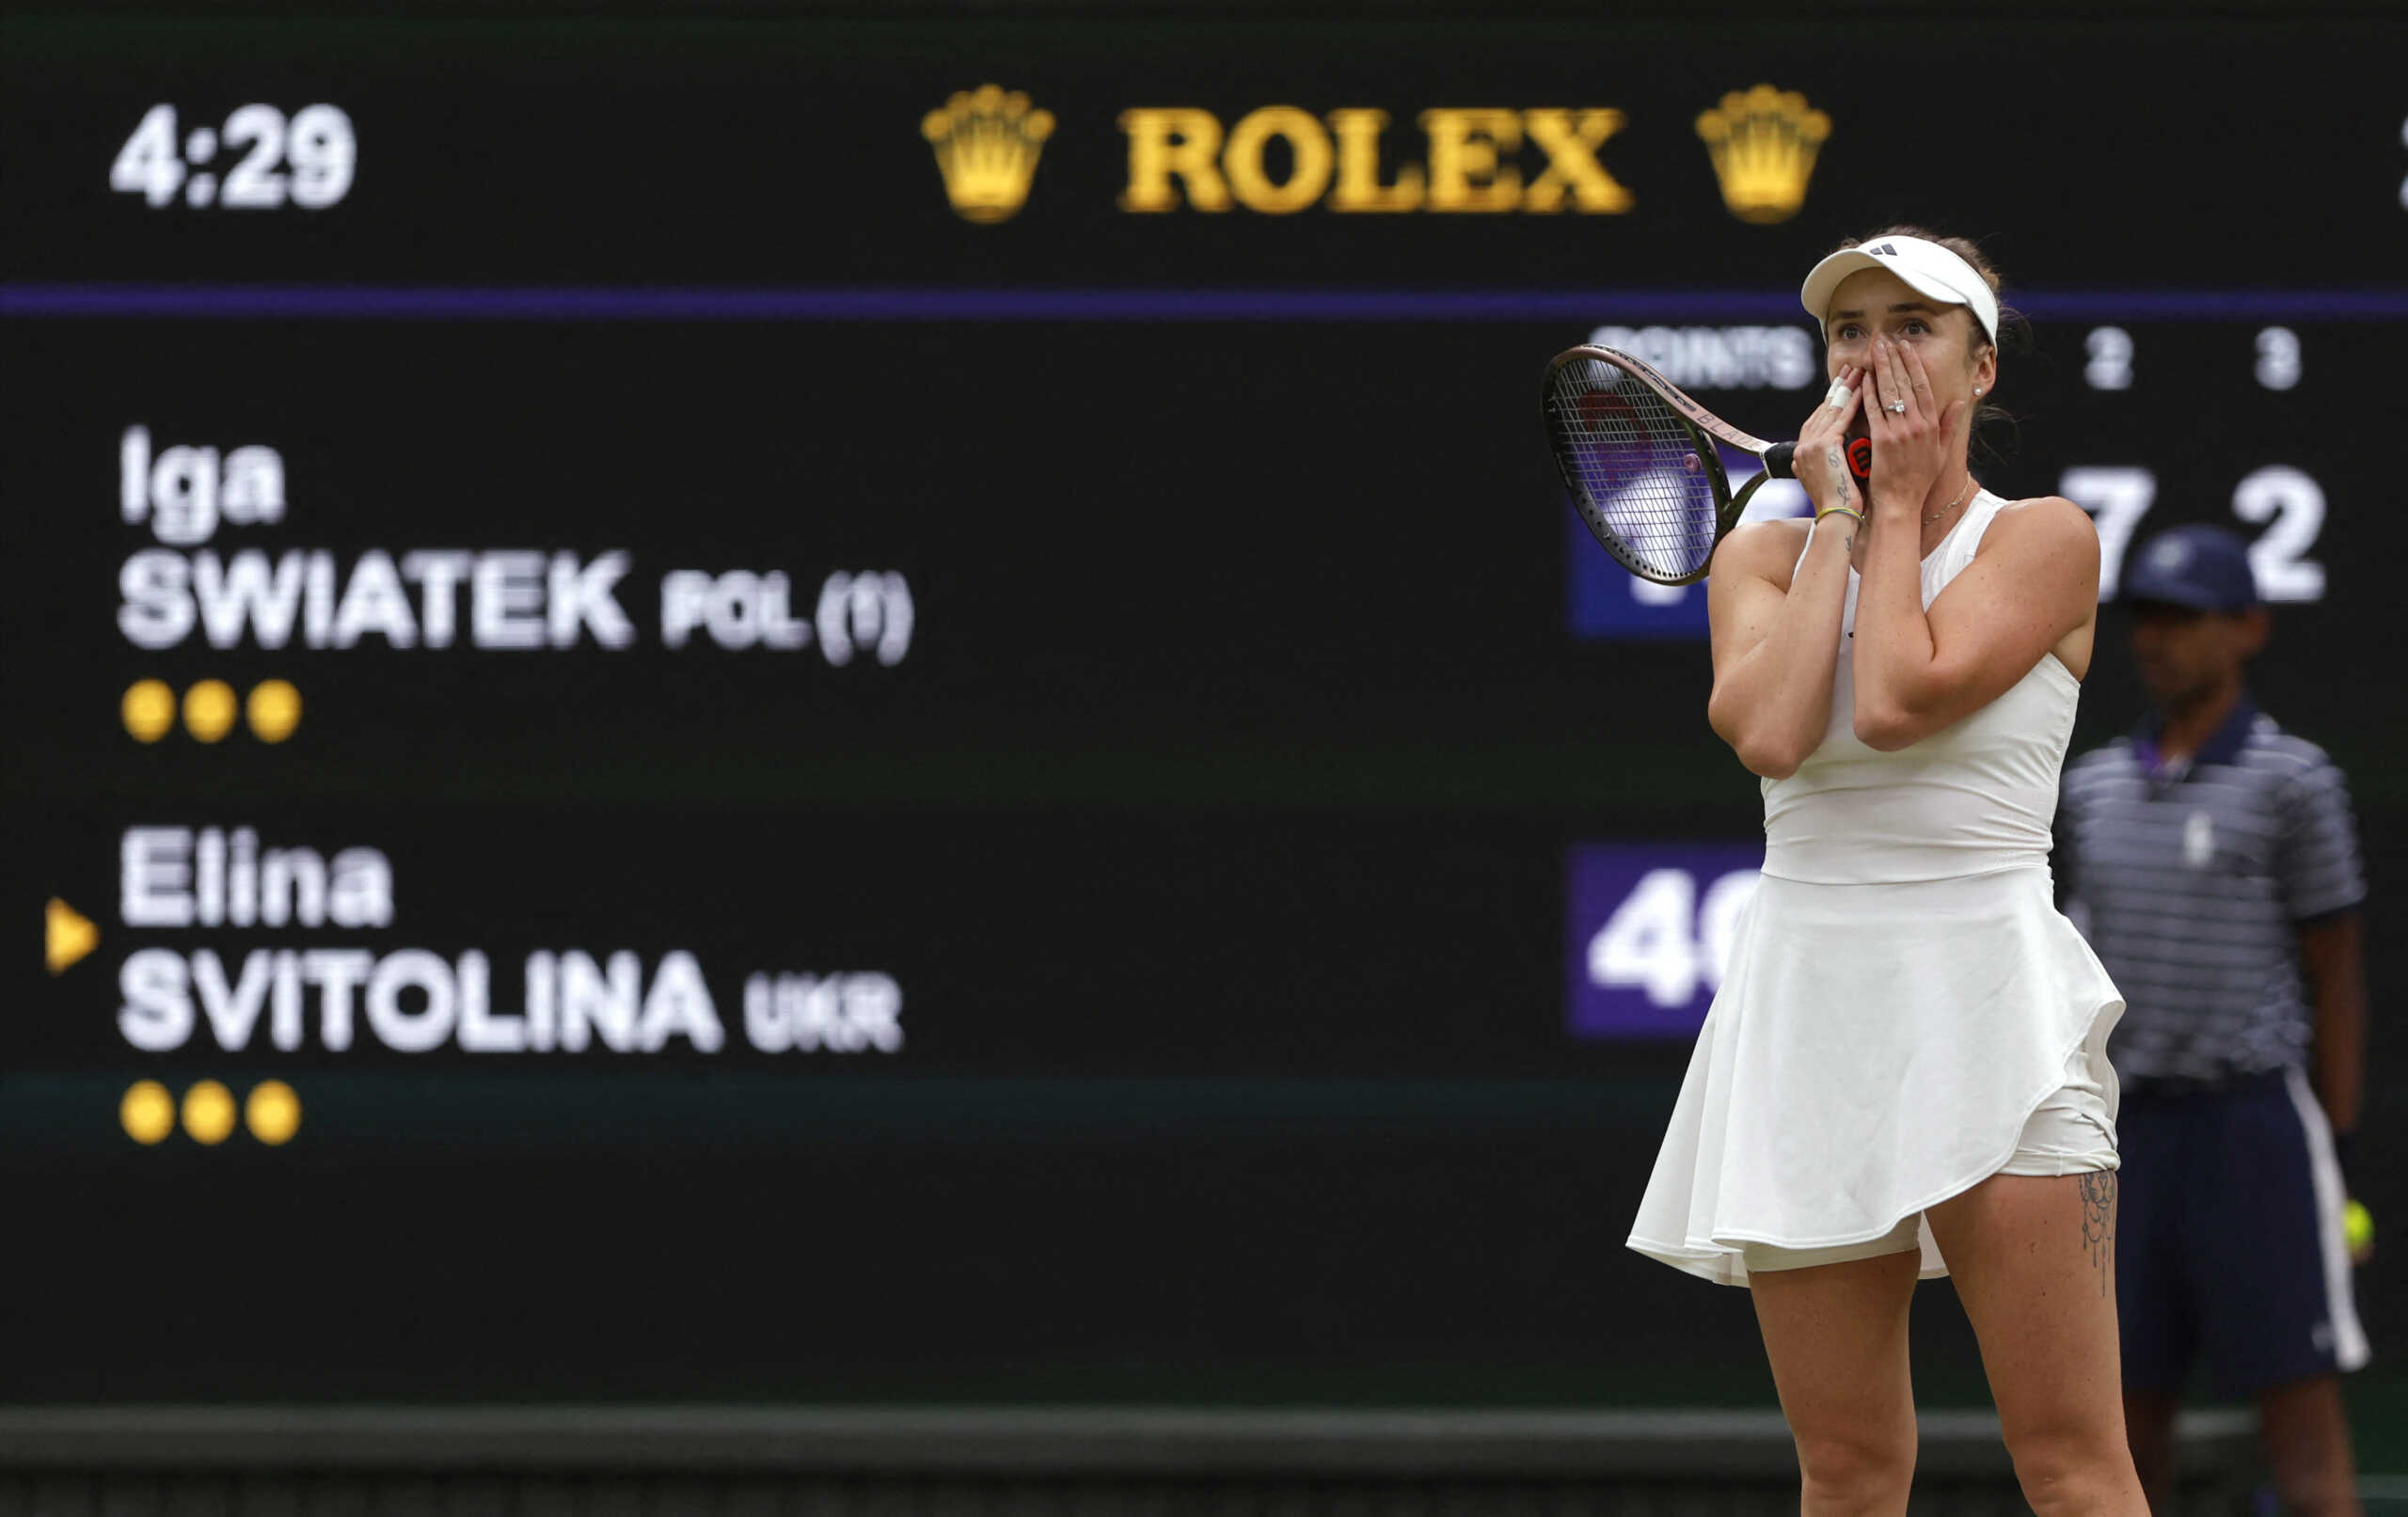 «Βόμβα» στο Wimbledon: Η Ελίνα Σβιτολίνα απέκλεισε την Ίγκα Σφιόντεκ